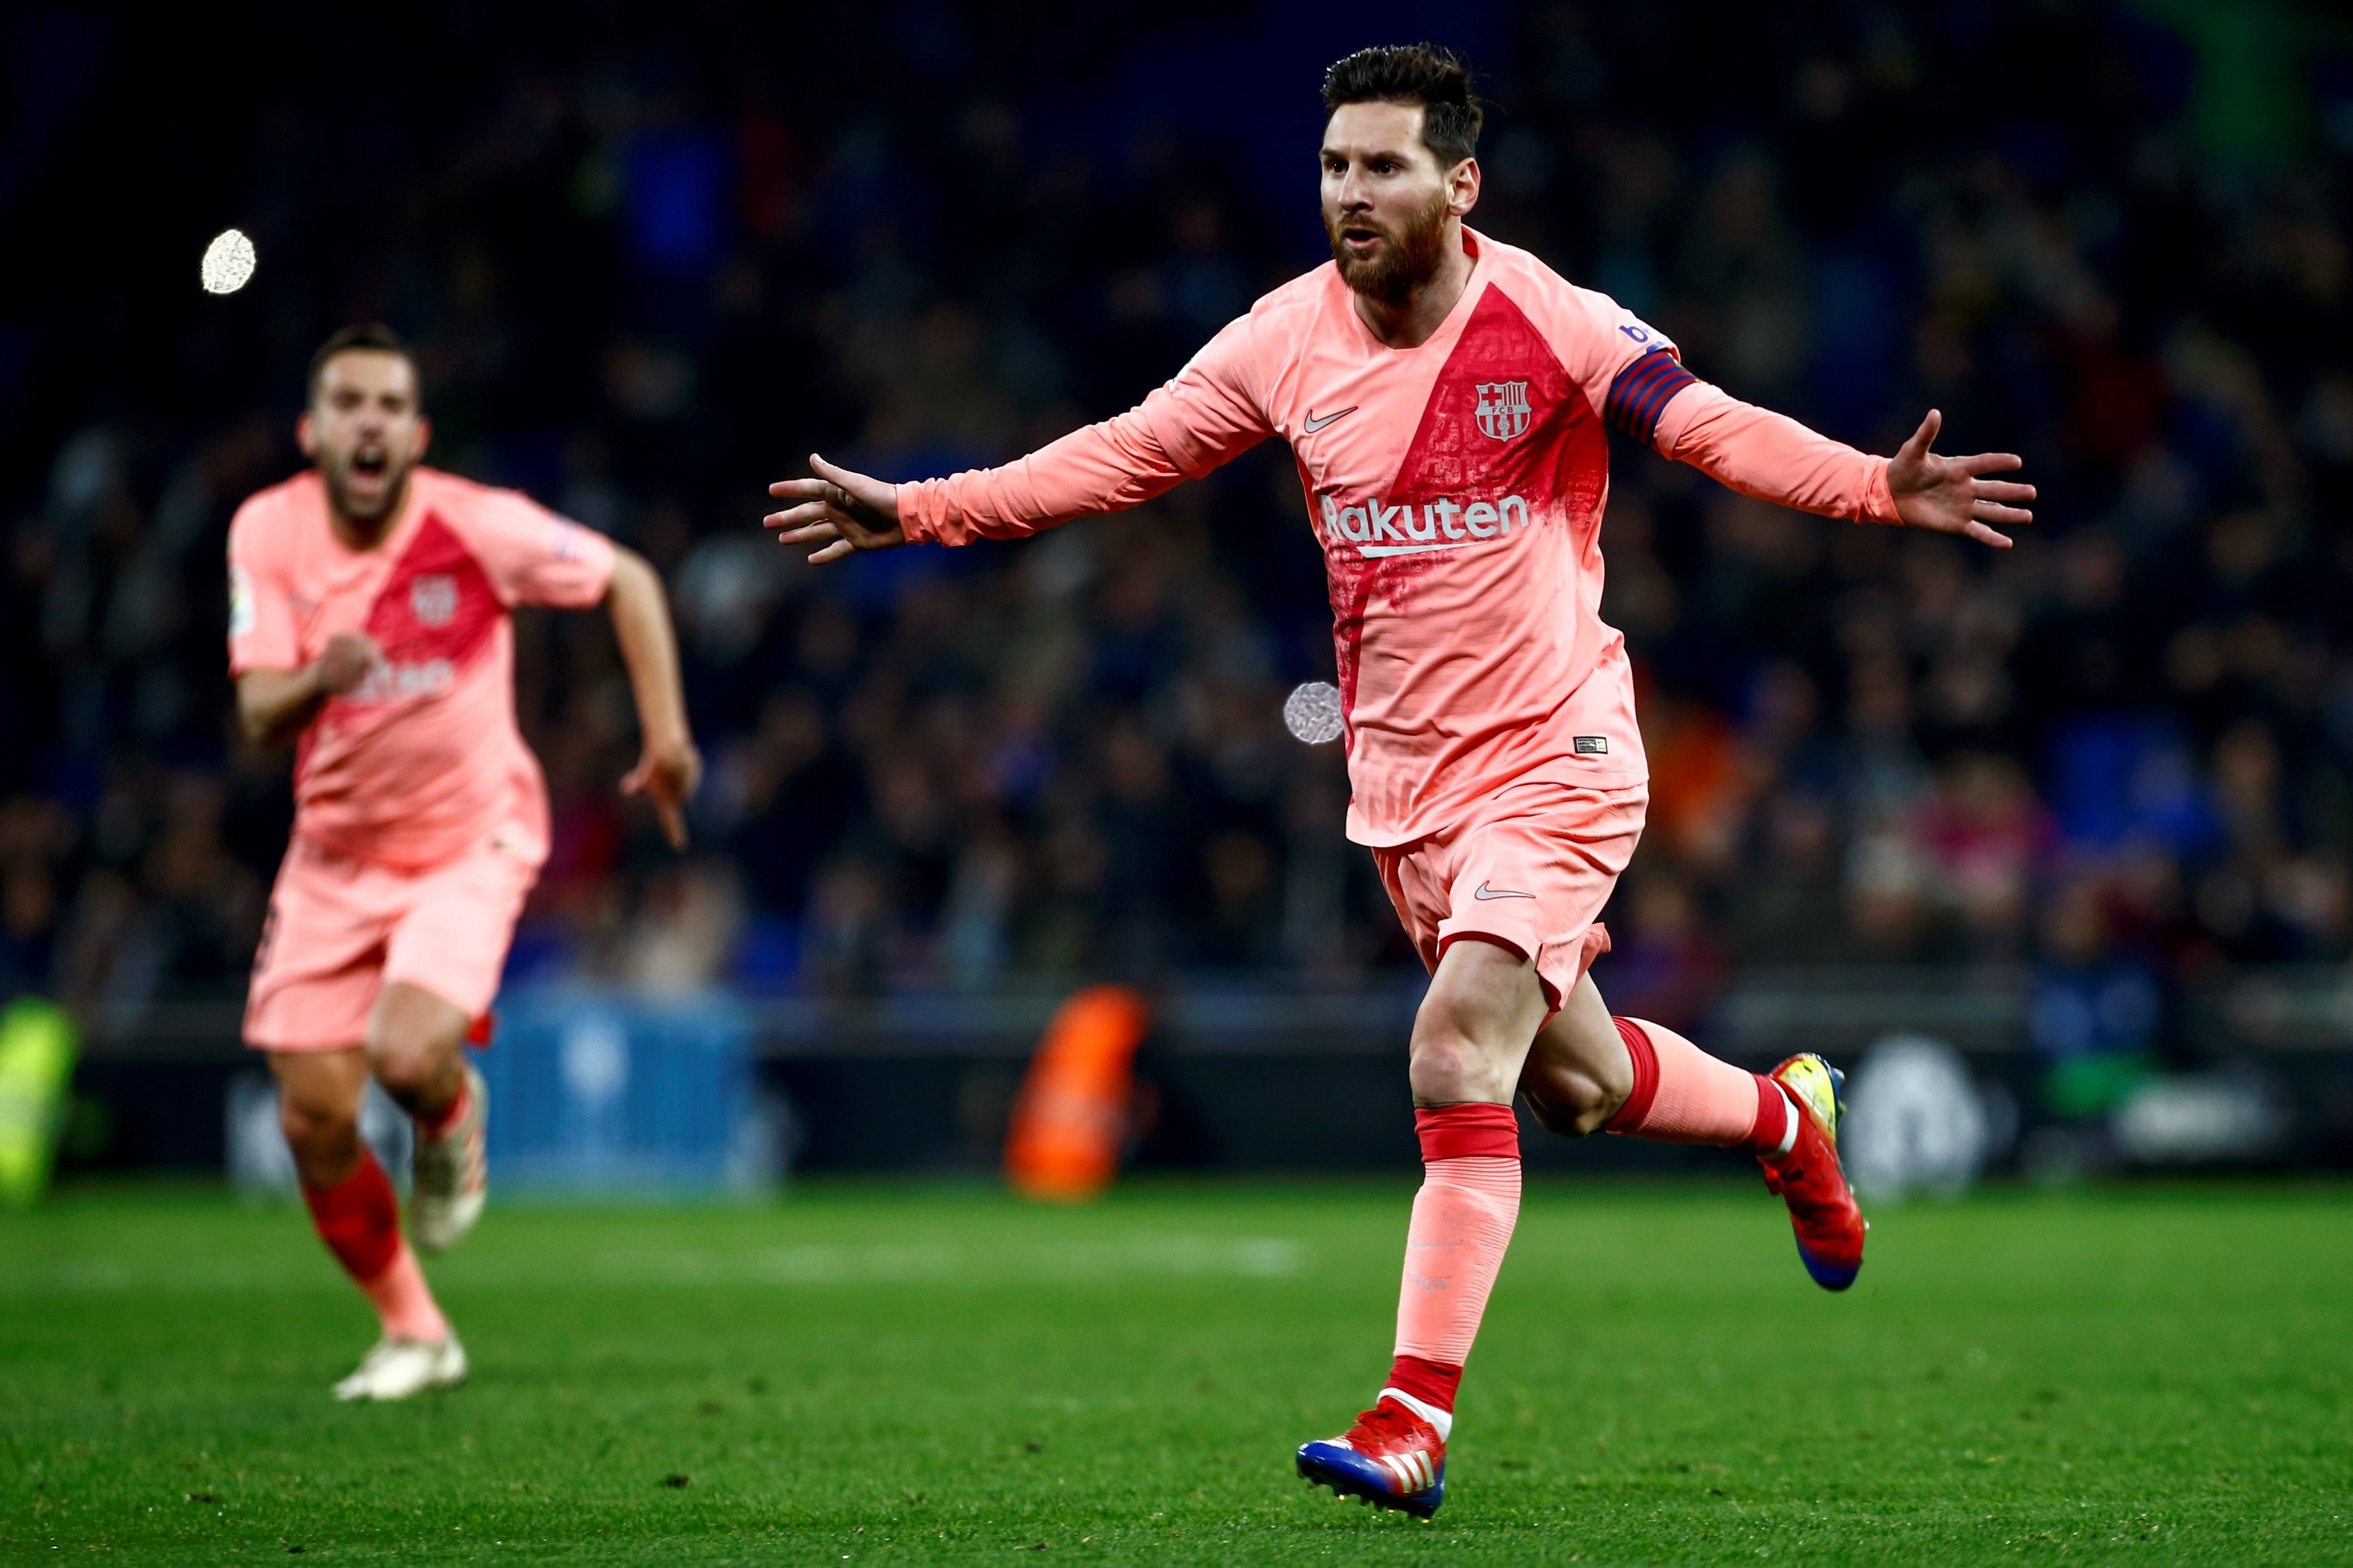 El mundo del fútbol se rinde a Messi